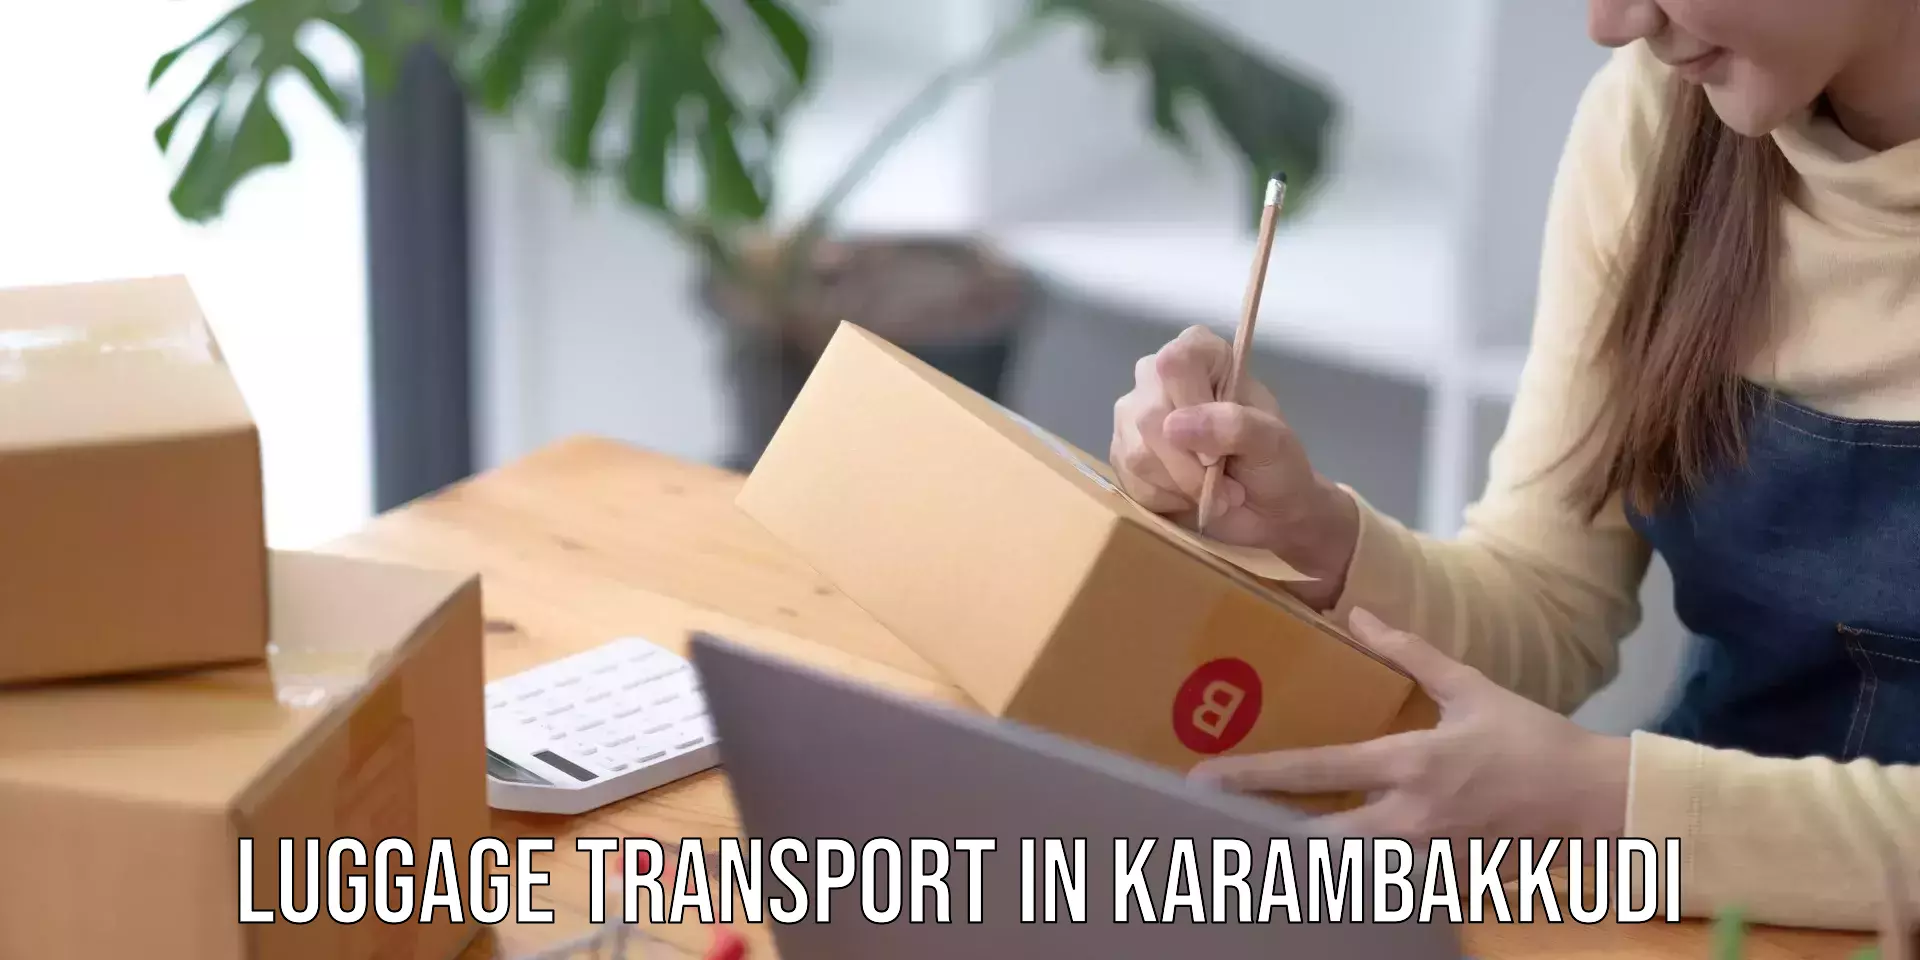 Personal baggage courier in Karambakkudi